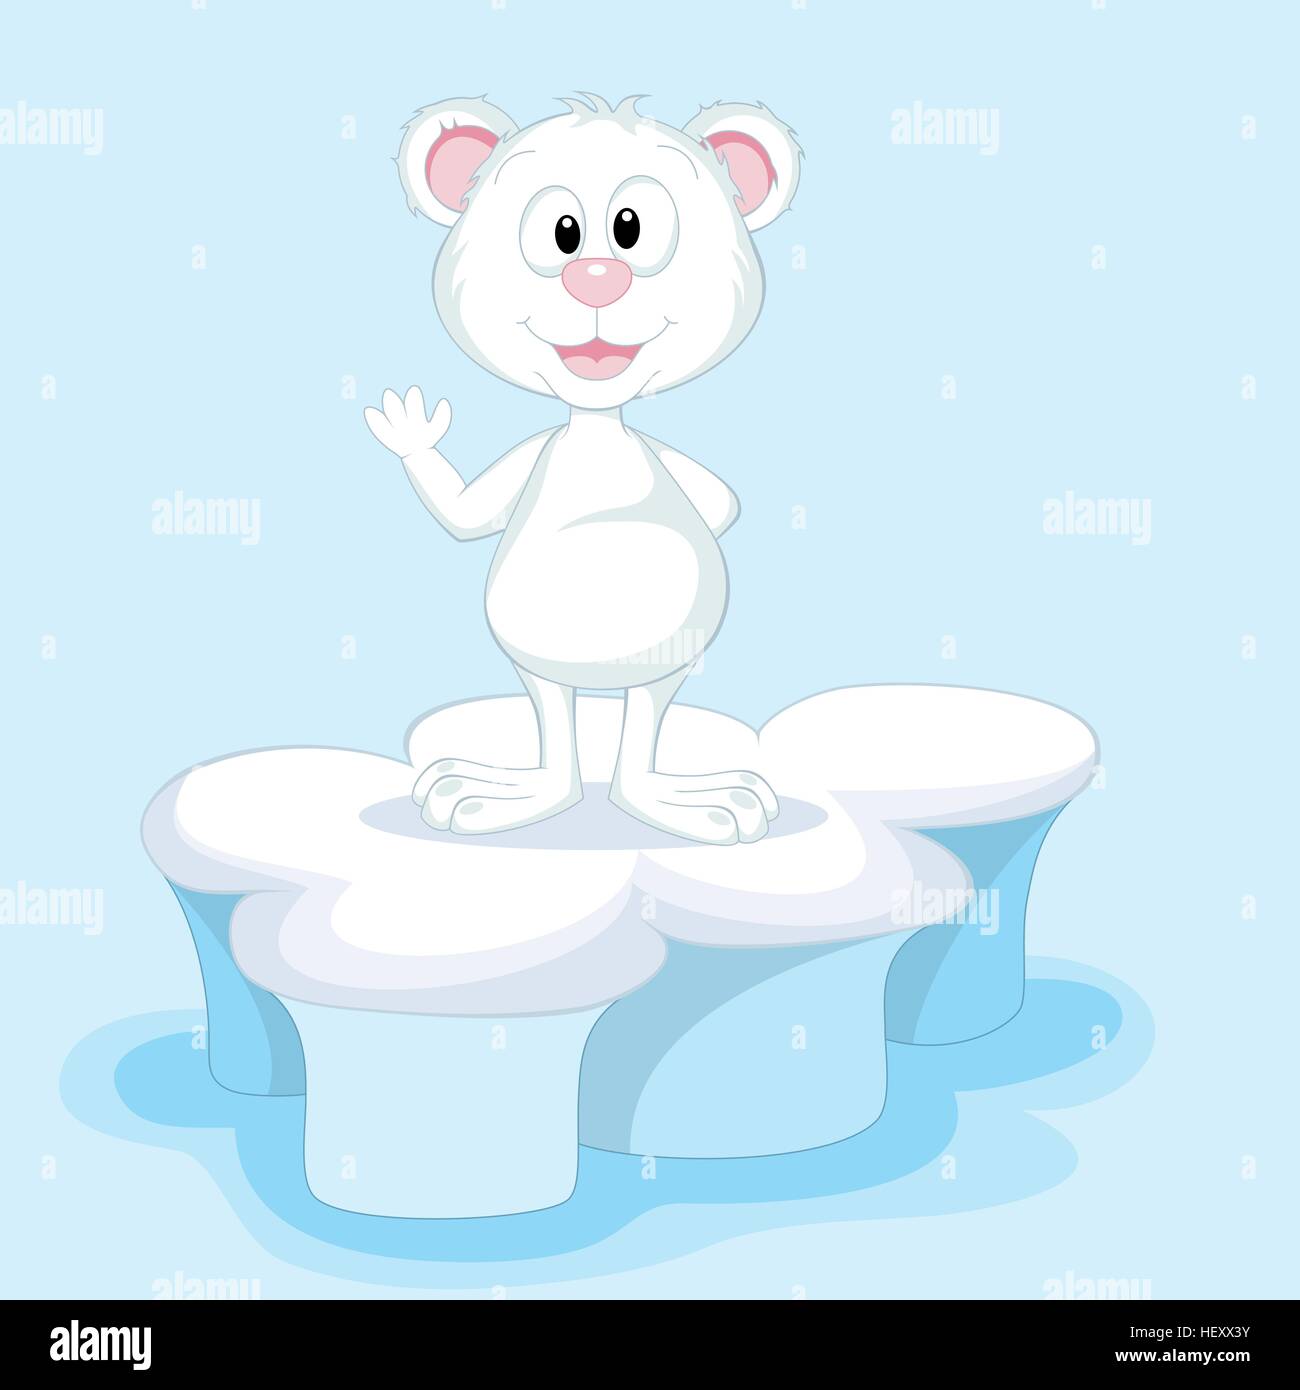 Funny Polar Bear on an ice floe Stock Vector